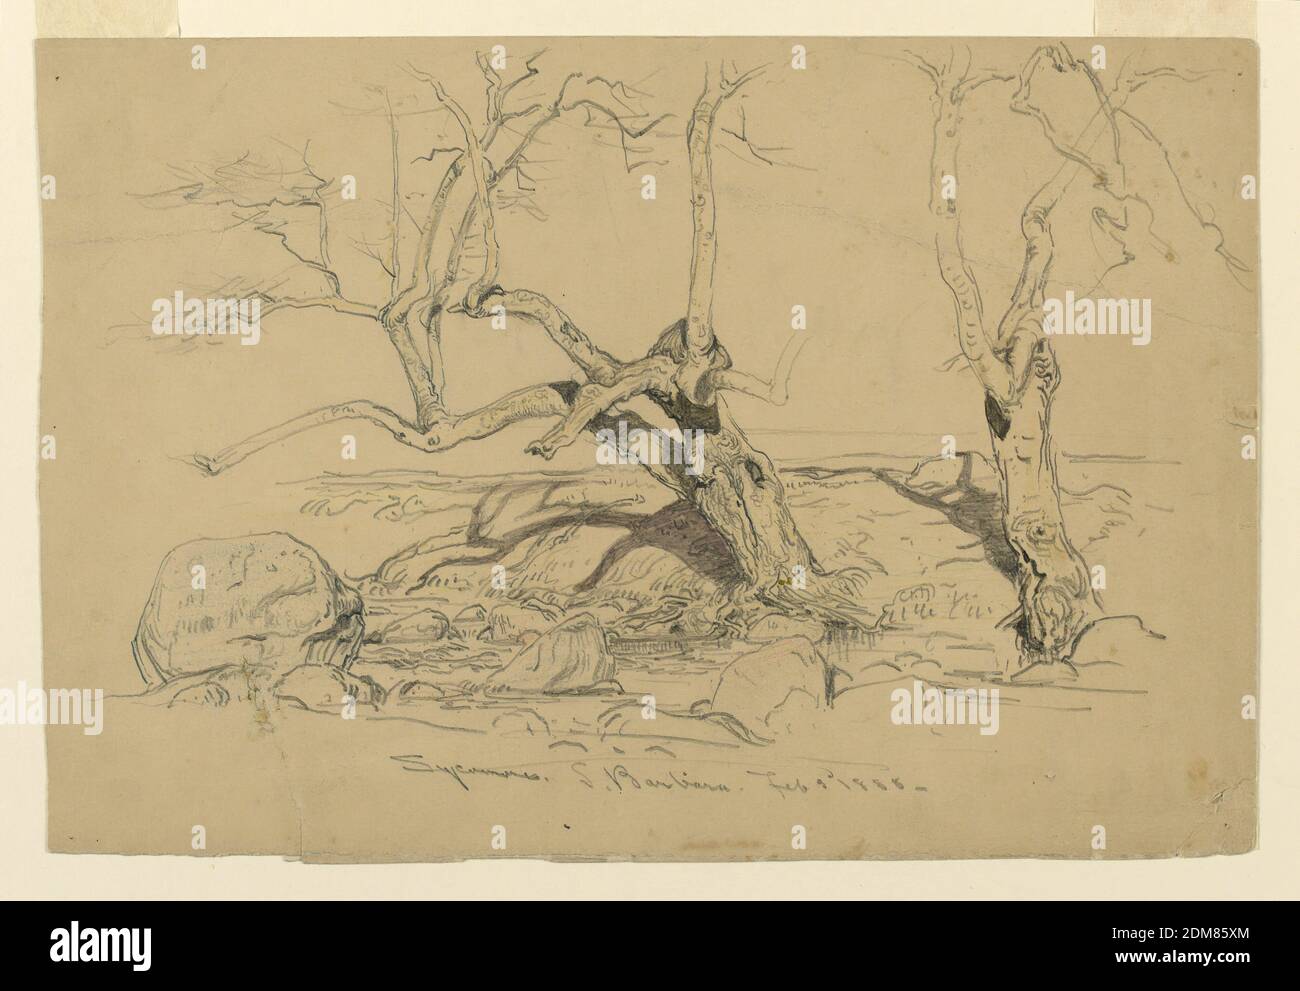 Studio, alberi, Santa Barbara, California, Samuel Colman, americano,  1832–1920, grafite, crayon su carta crema, due sycamores senza foglie sono  mostrati sulla riva di un ruscello, il cui letto è mostrato in primo